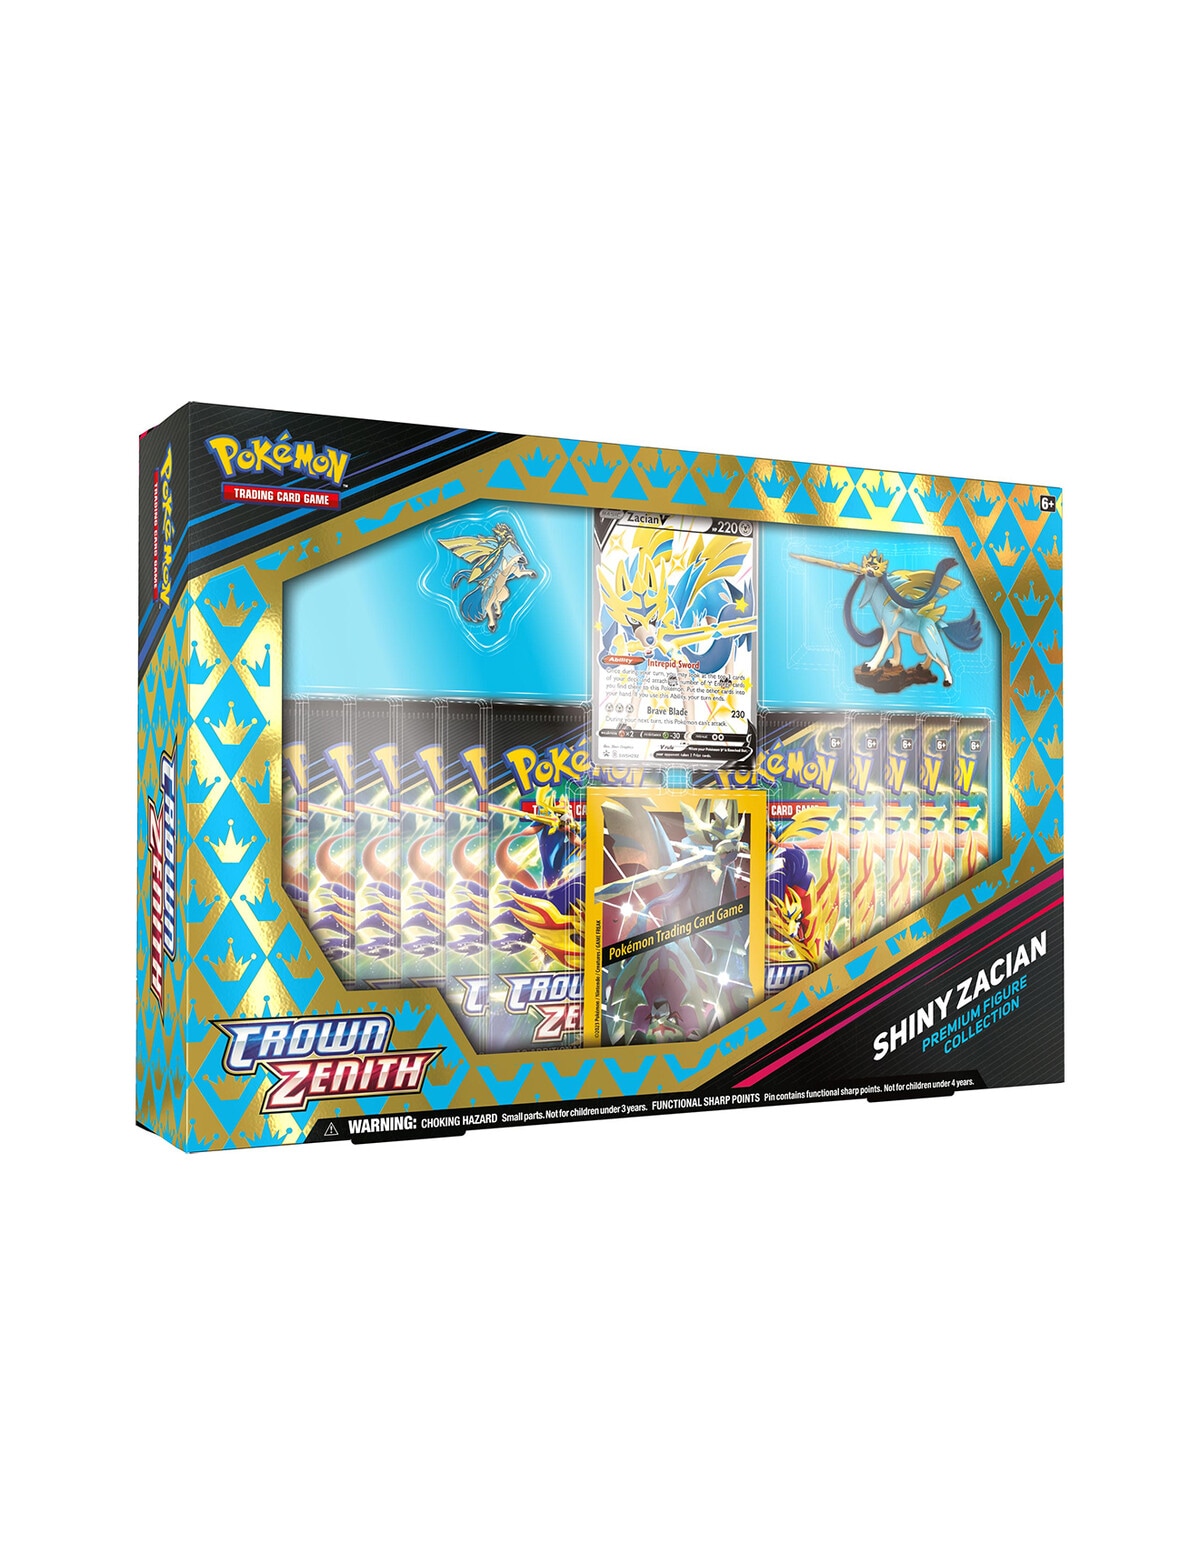 Pokémon TCG - Crown Zenith - Shiny Zacian & Zamazenta Premium